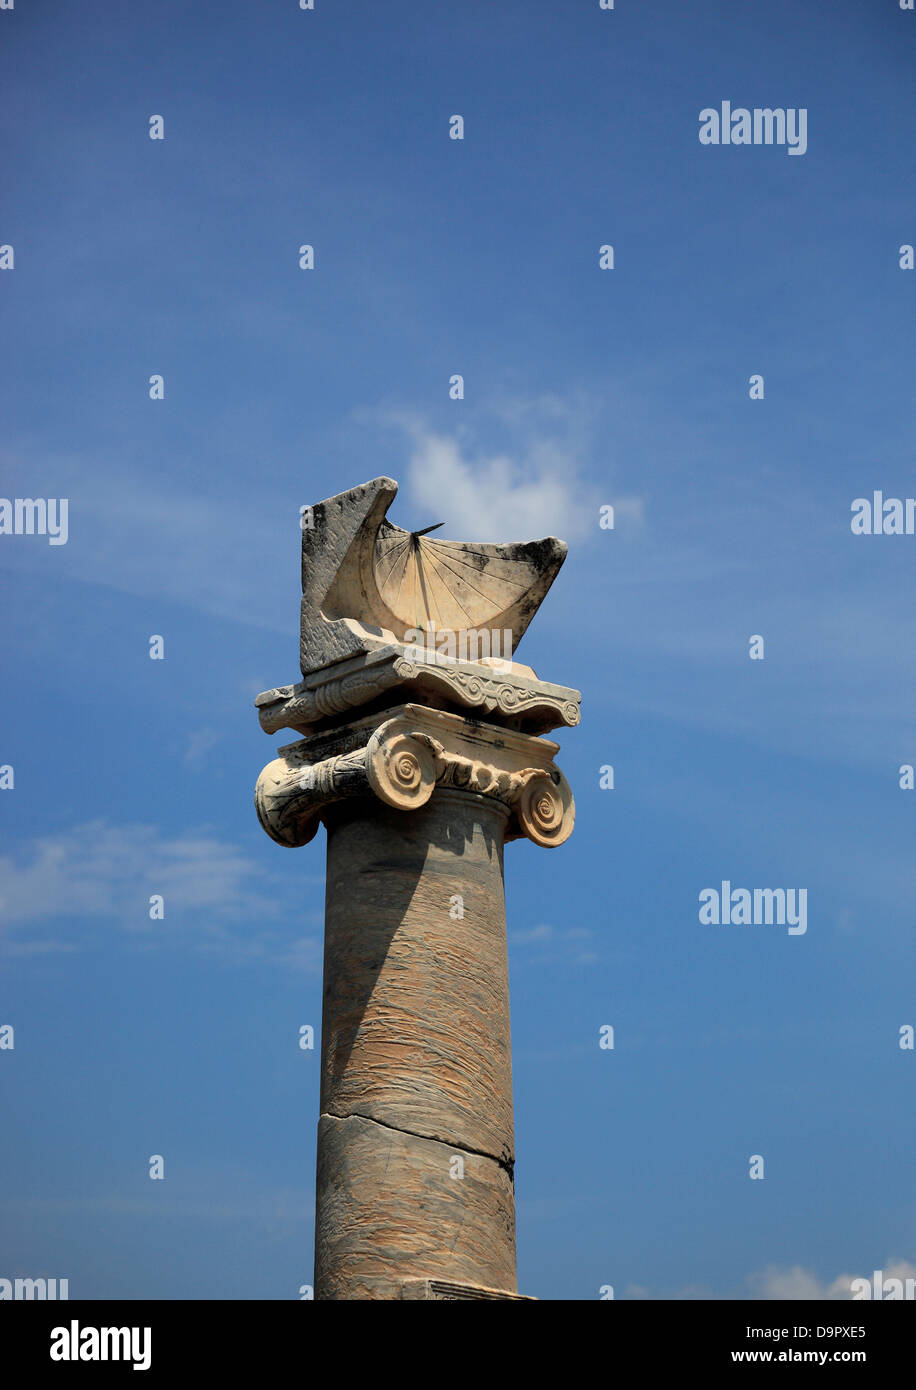 Temple d'Apollon avec le cadran solaire - pilier de la première période impériale, Pompéi, Campanie, Italie Banque D'Images